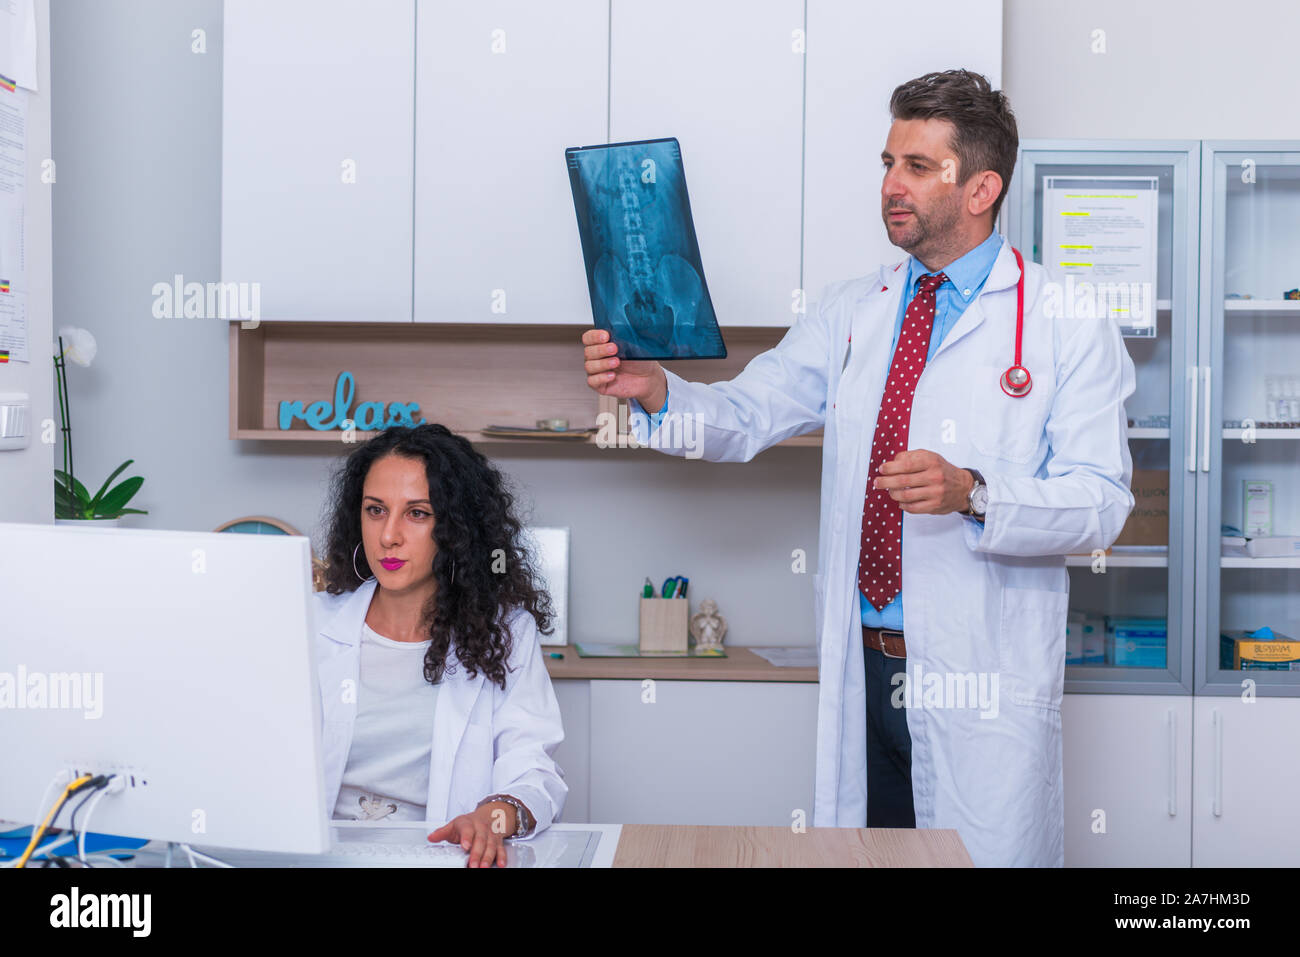 Männlicher Arzt in seiner Mitte 40 die Lesung ein Röntgenbild (Radiographie) von einem Patienten hip Region (COXA) beim Stehen in einem Krankenhaus Radiologie - Abteilung Stockfoto